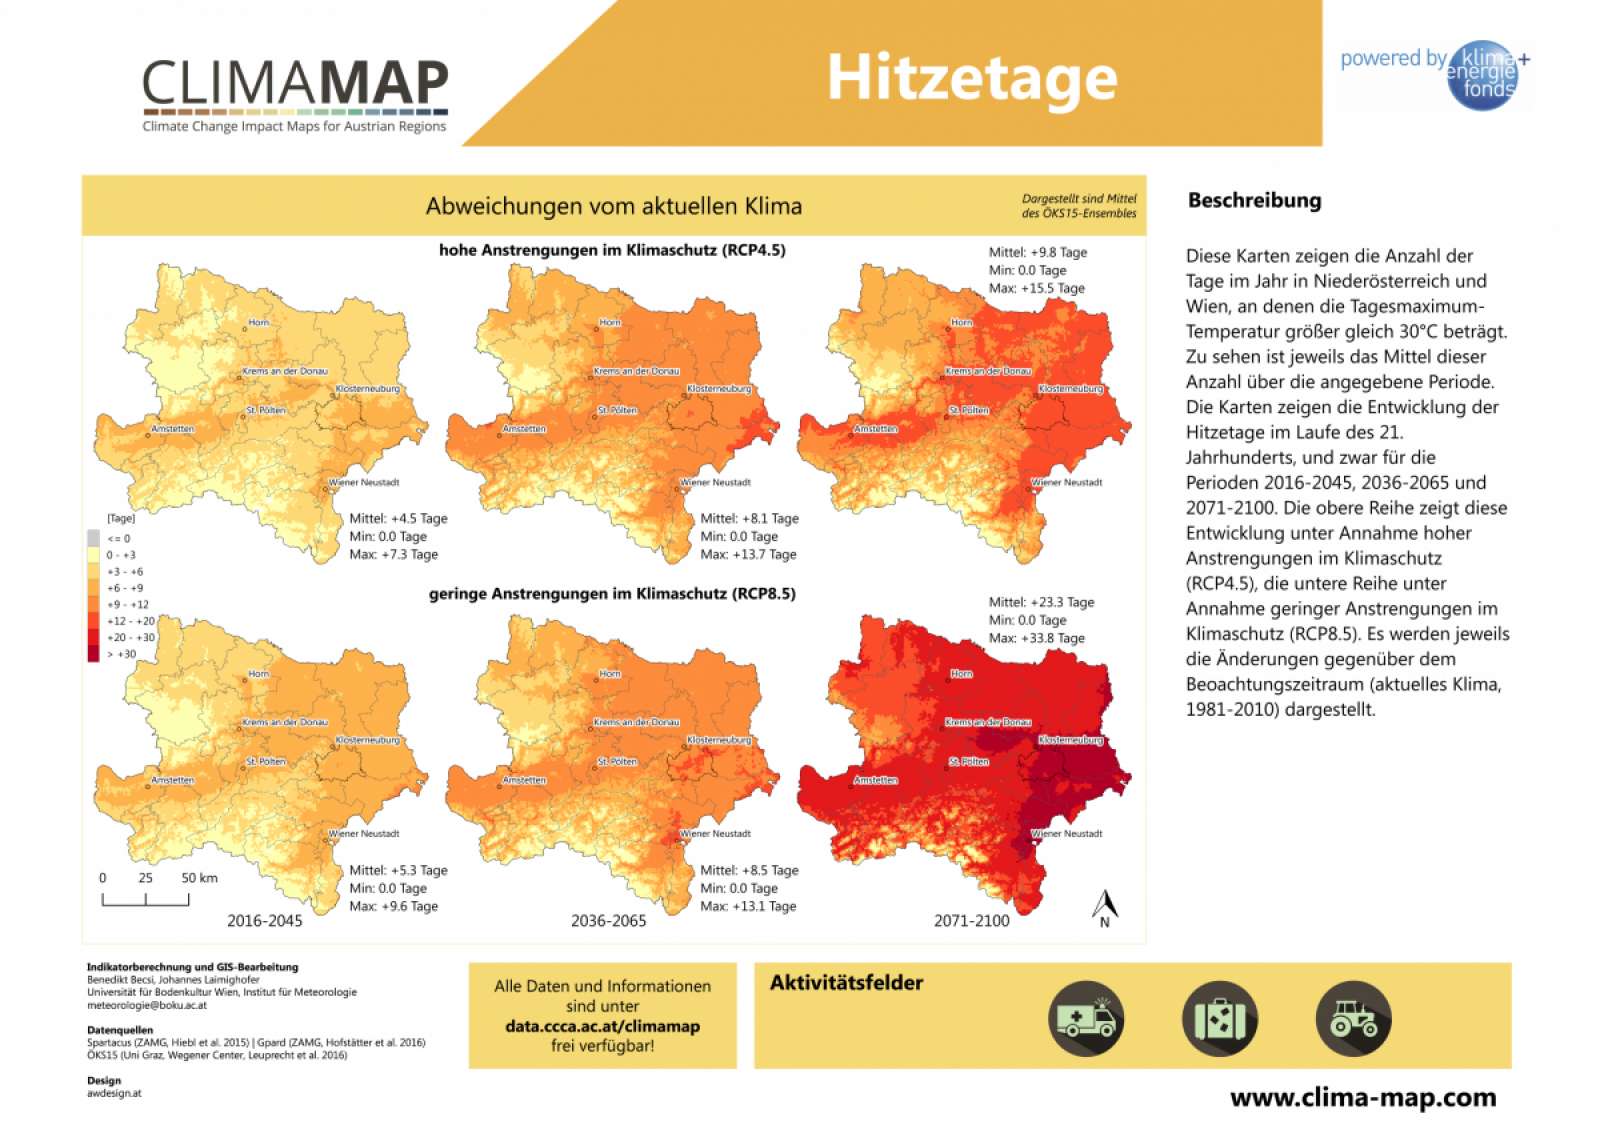 Karte die zeigt, wie sich die Hitzetage in Niederösterreich in Zukunft verändern werden